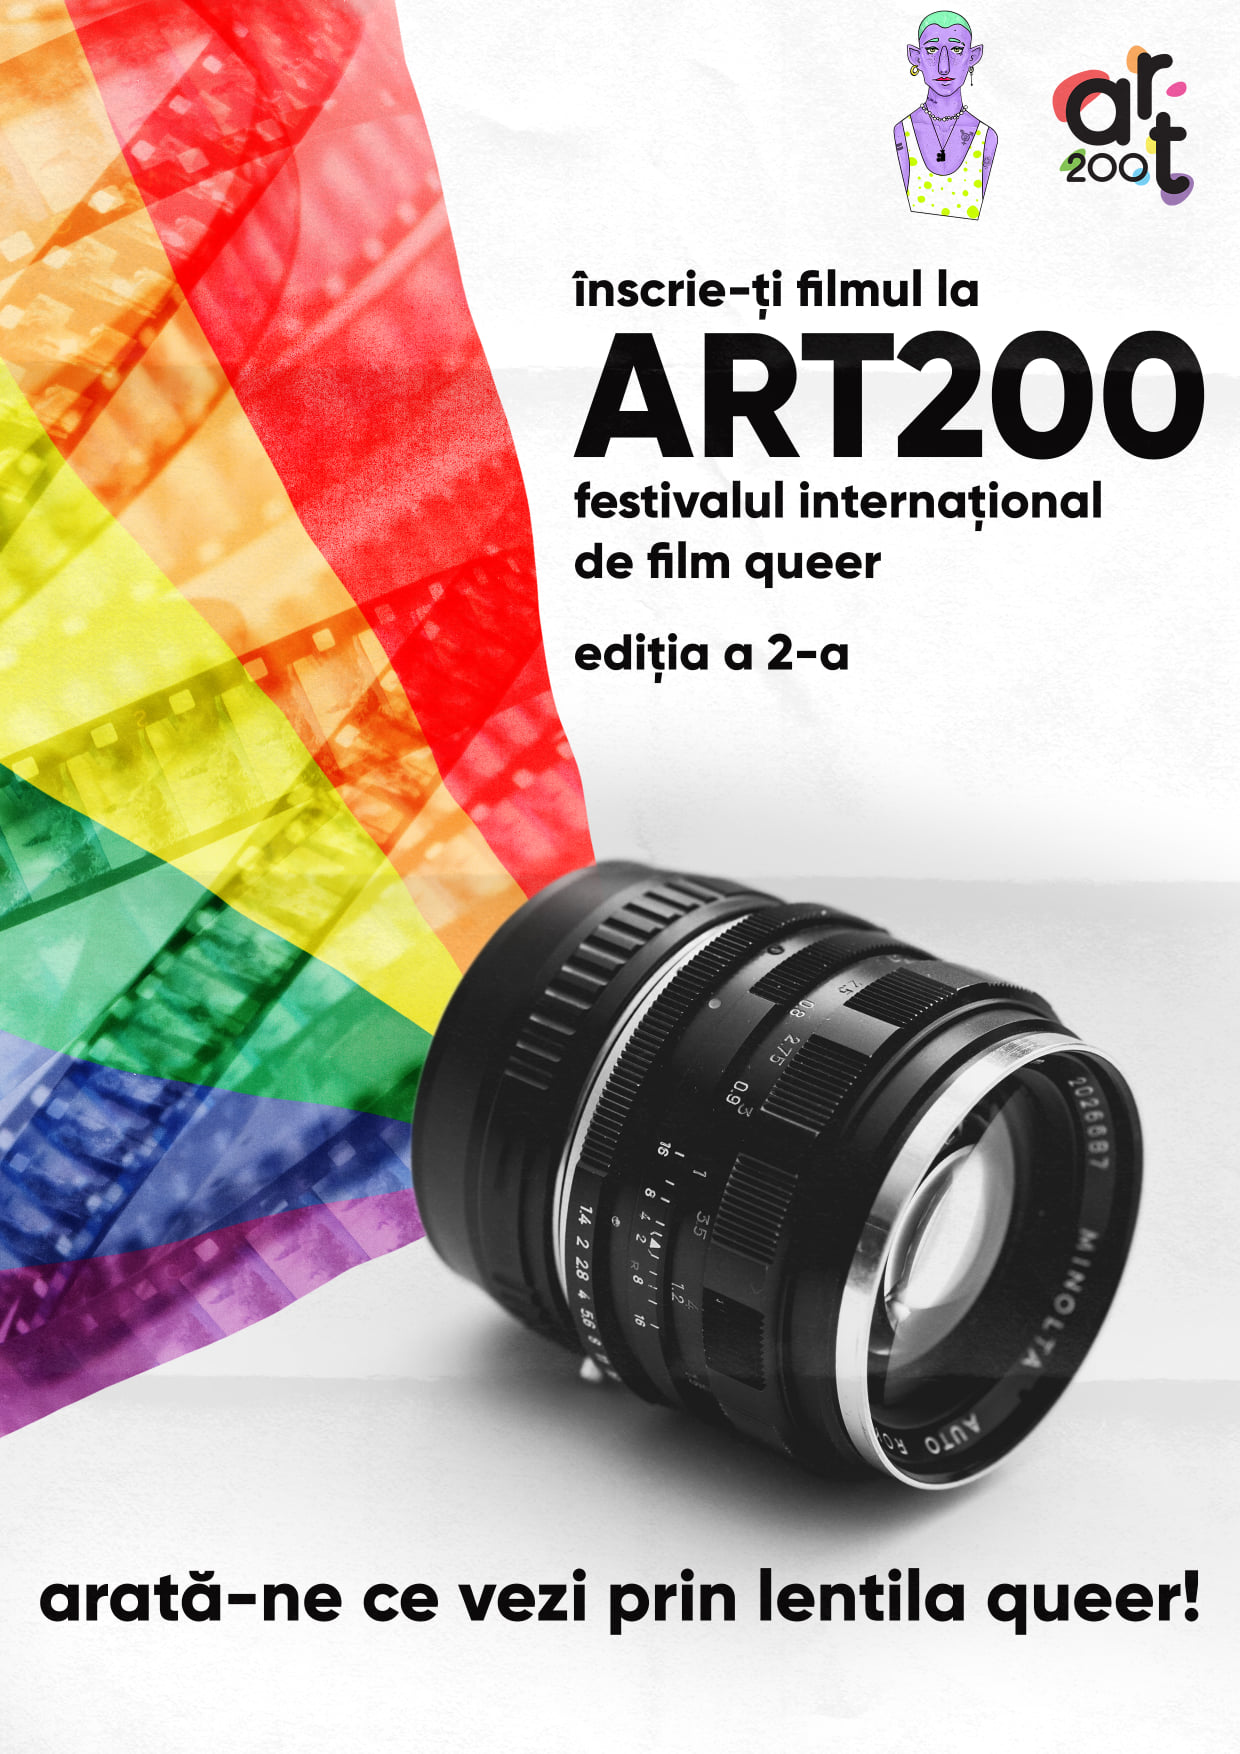 ART200, Festivalul Internațional de Film Queer se întoarce în București în septembrie!